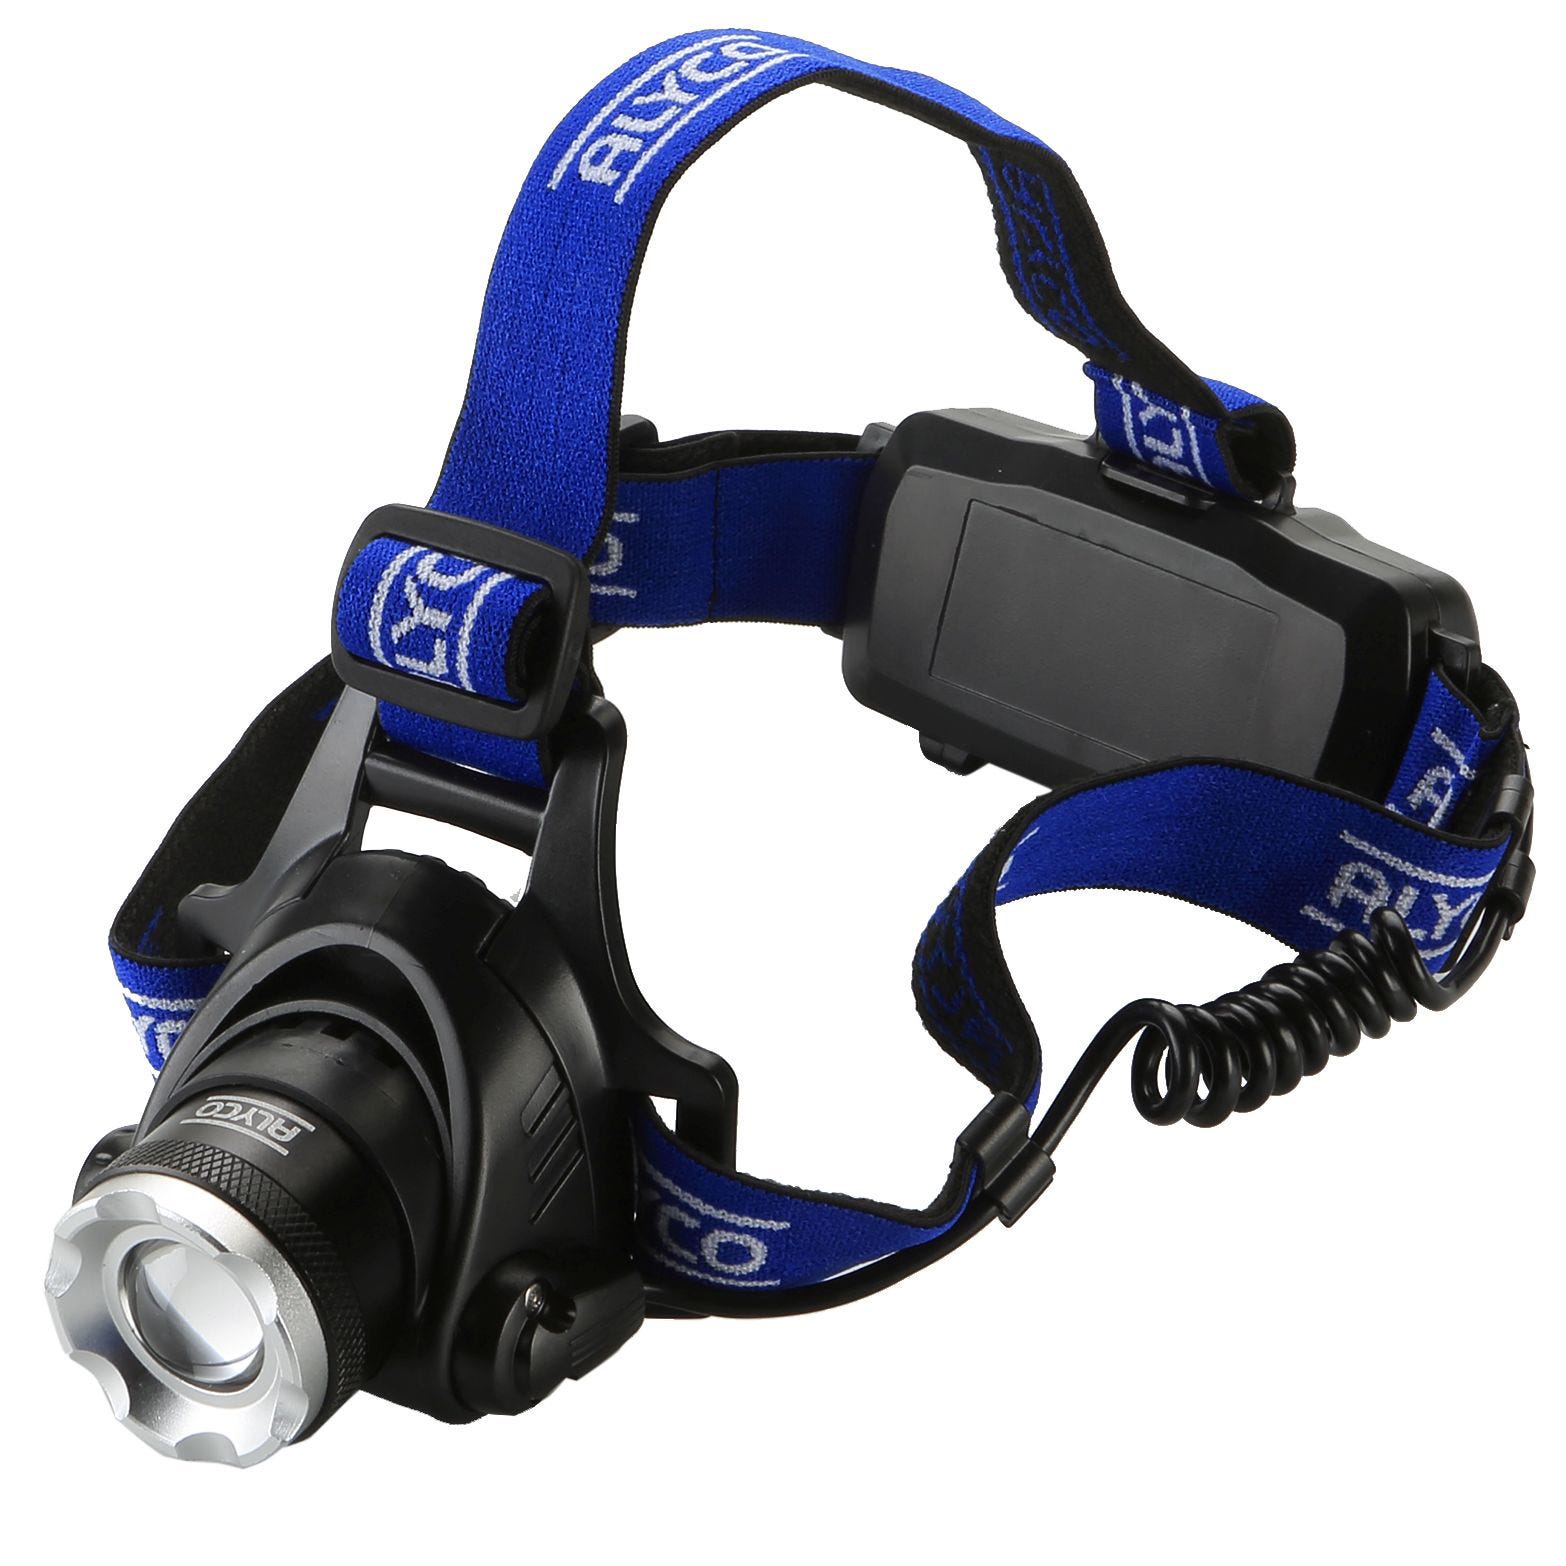 FISHTEC Lampe frontale LED Rechargeable Puissante 230 - 5 Modes d'Eclairage  - Capteur de Mouvements - Ideal Bricolage, Cyclisme, Course